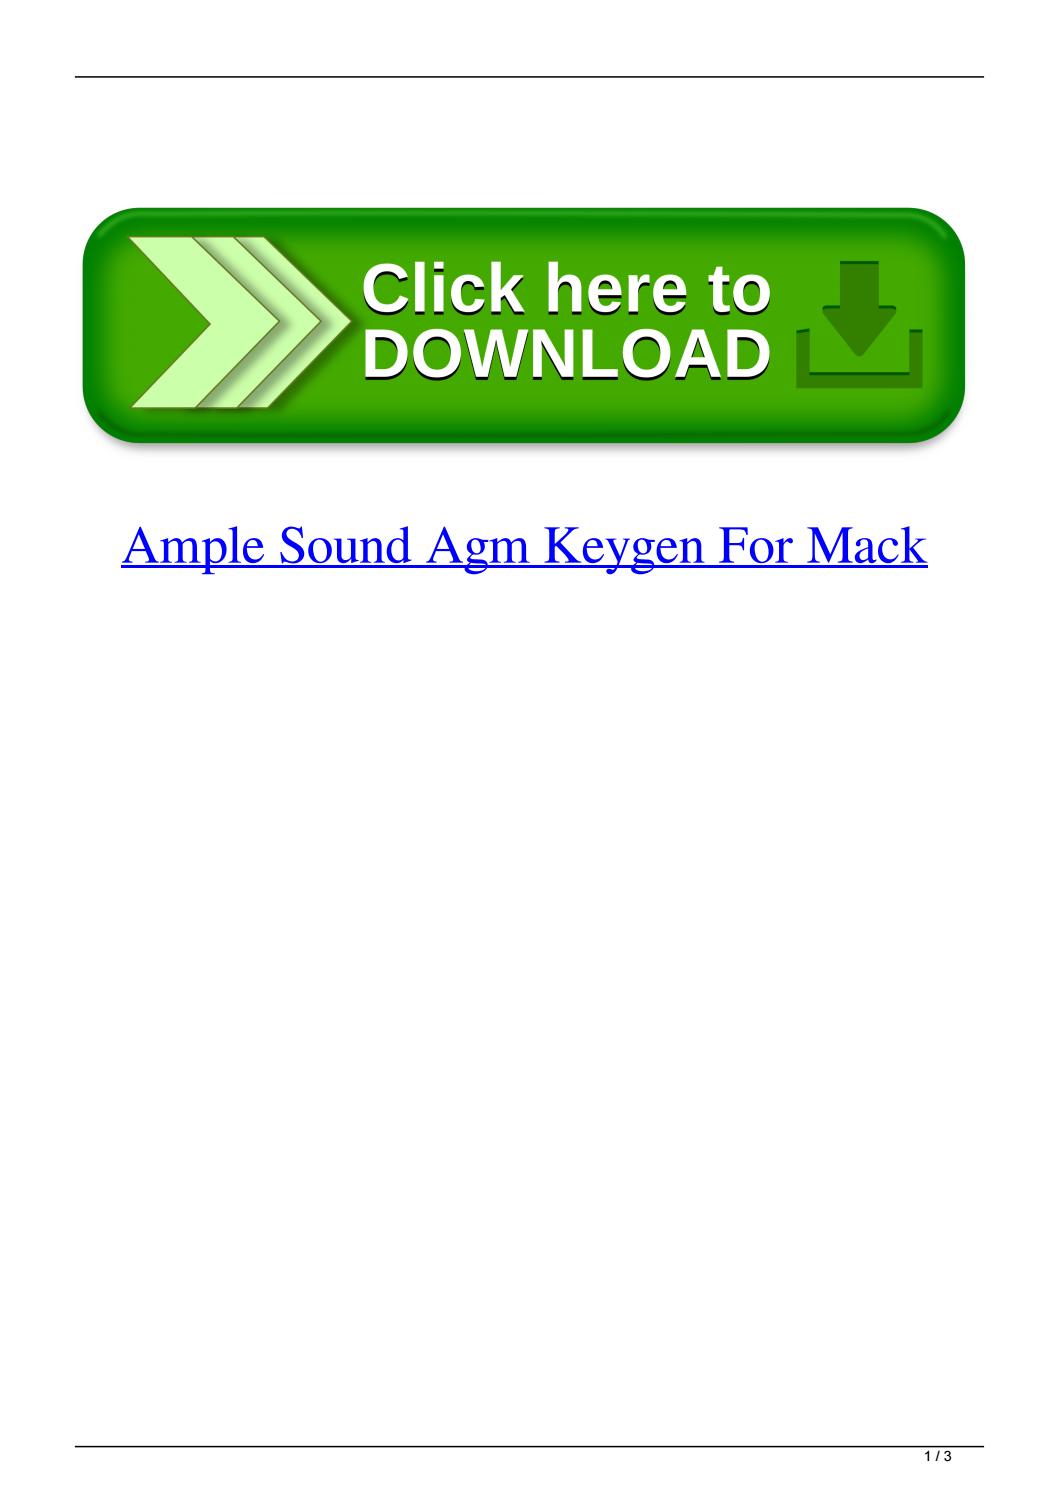 ample sound abu keygen mac